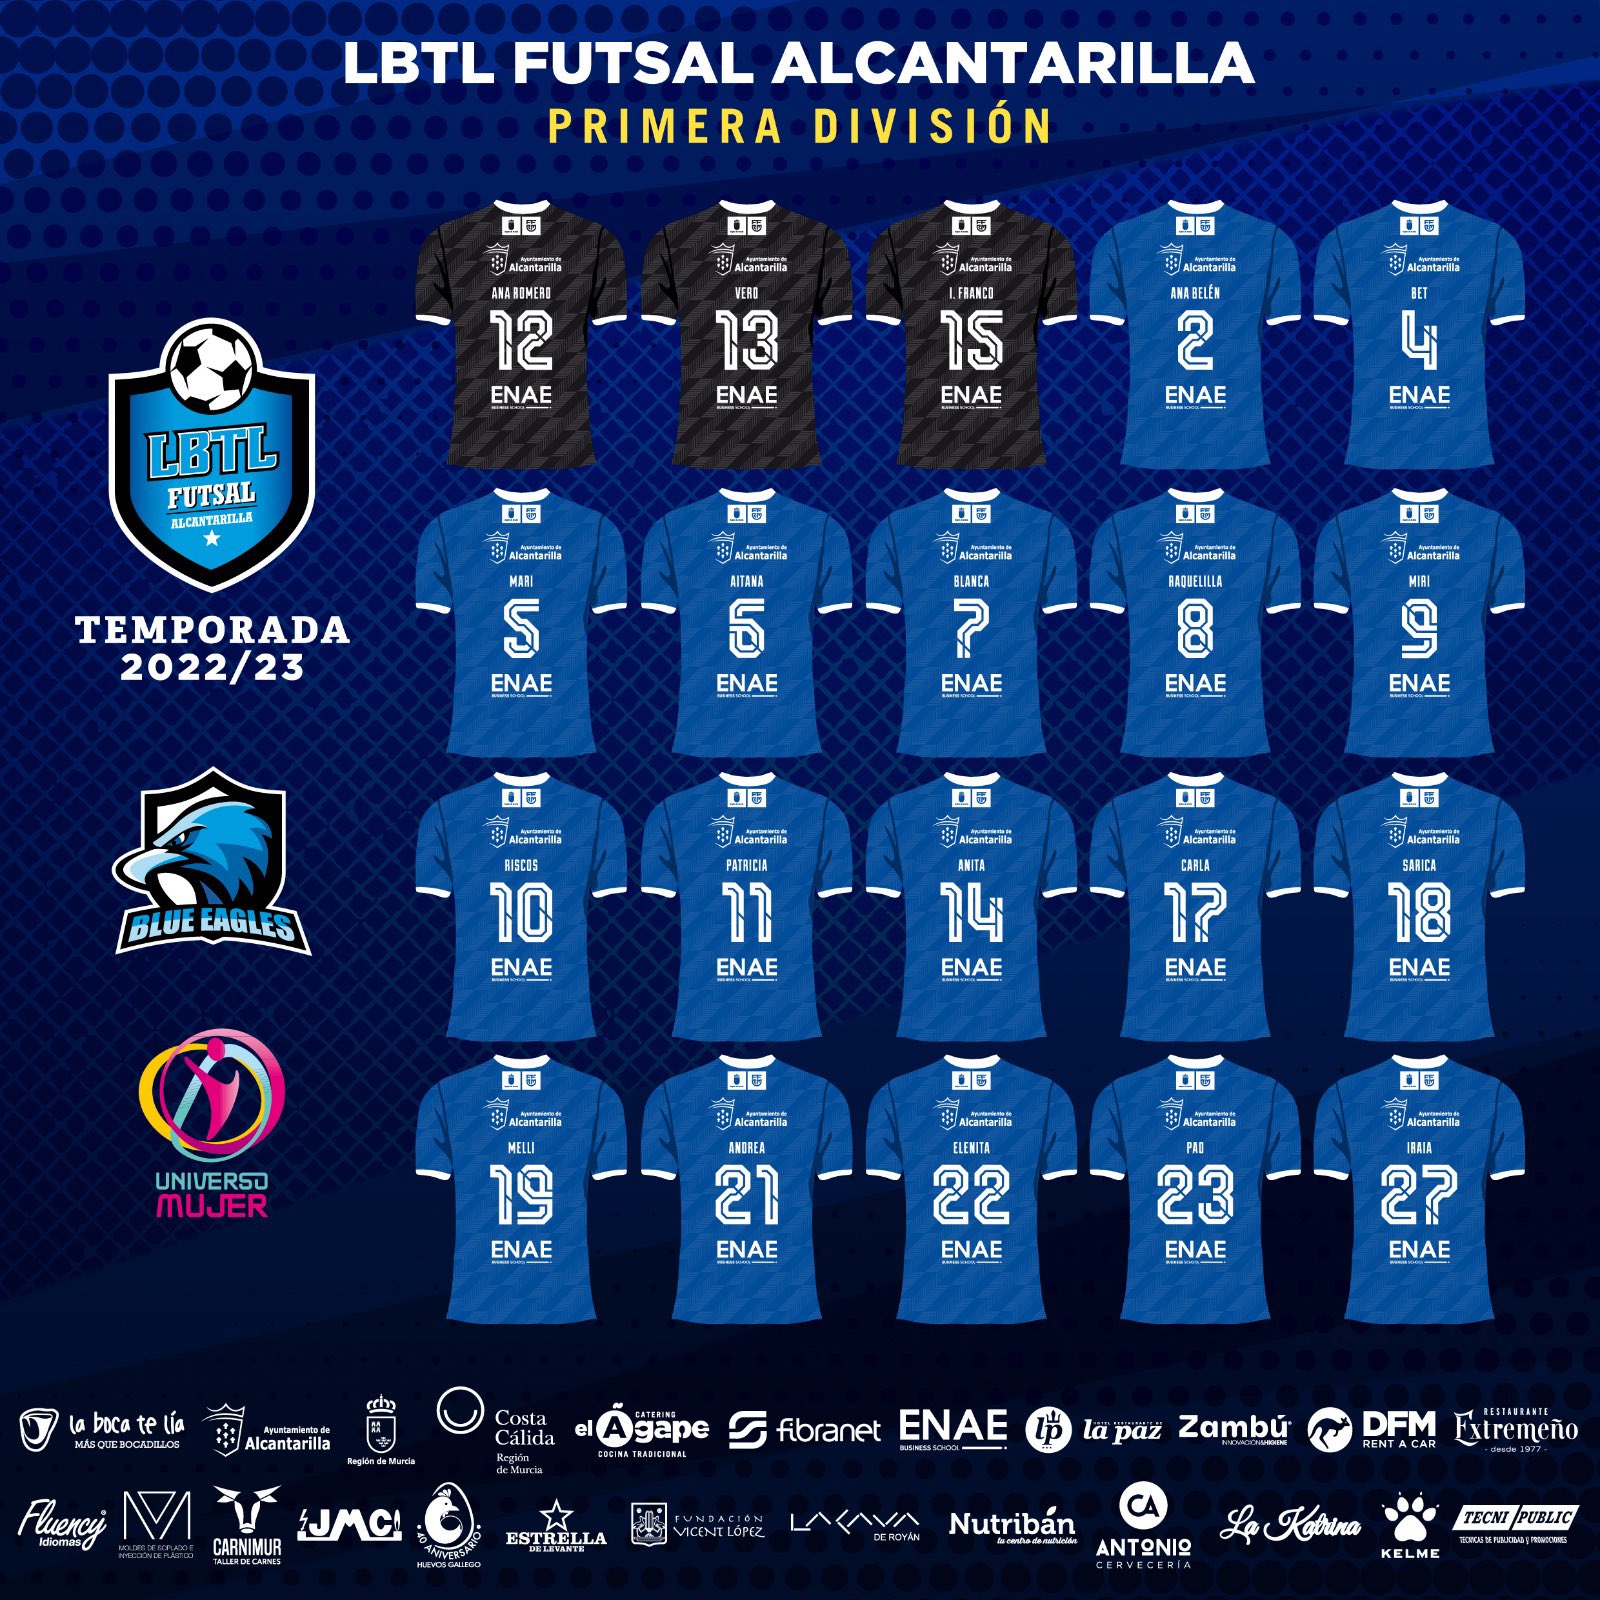 Plantilla de La Boca Te Lia Futsal Alcantarilla para la próxima Temporada. Foto: LBTL Futsal Alcantarilla